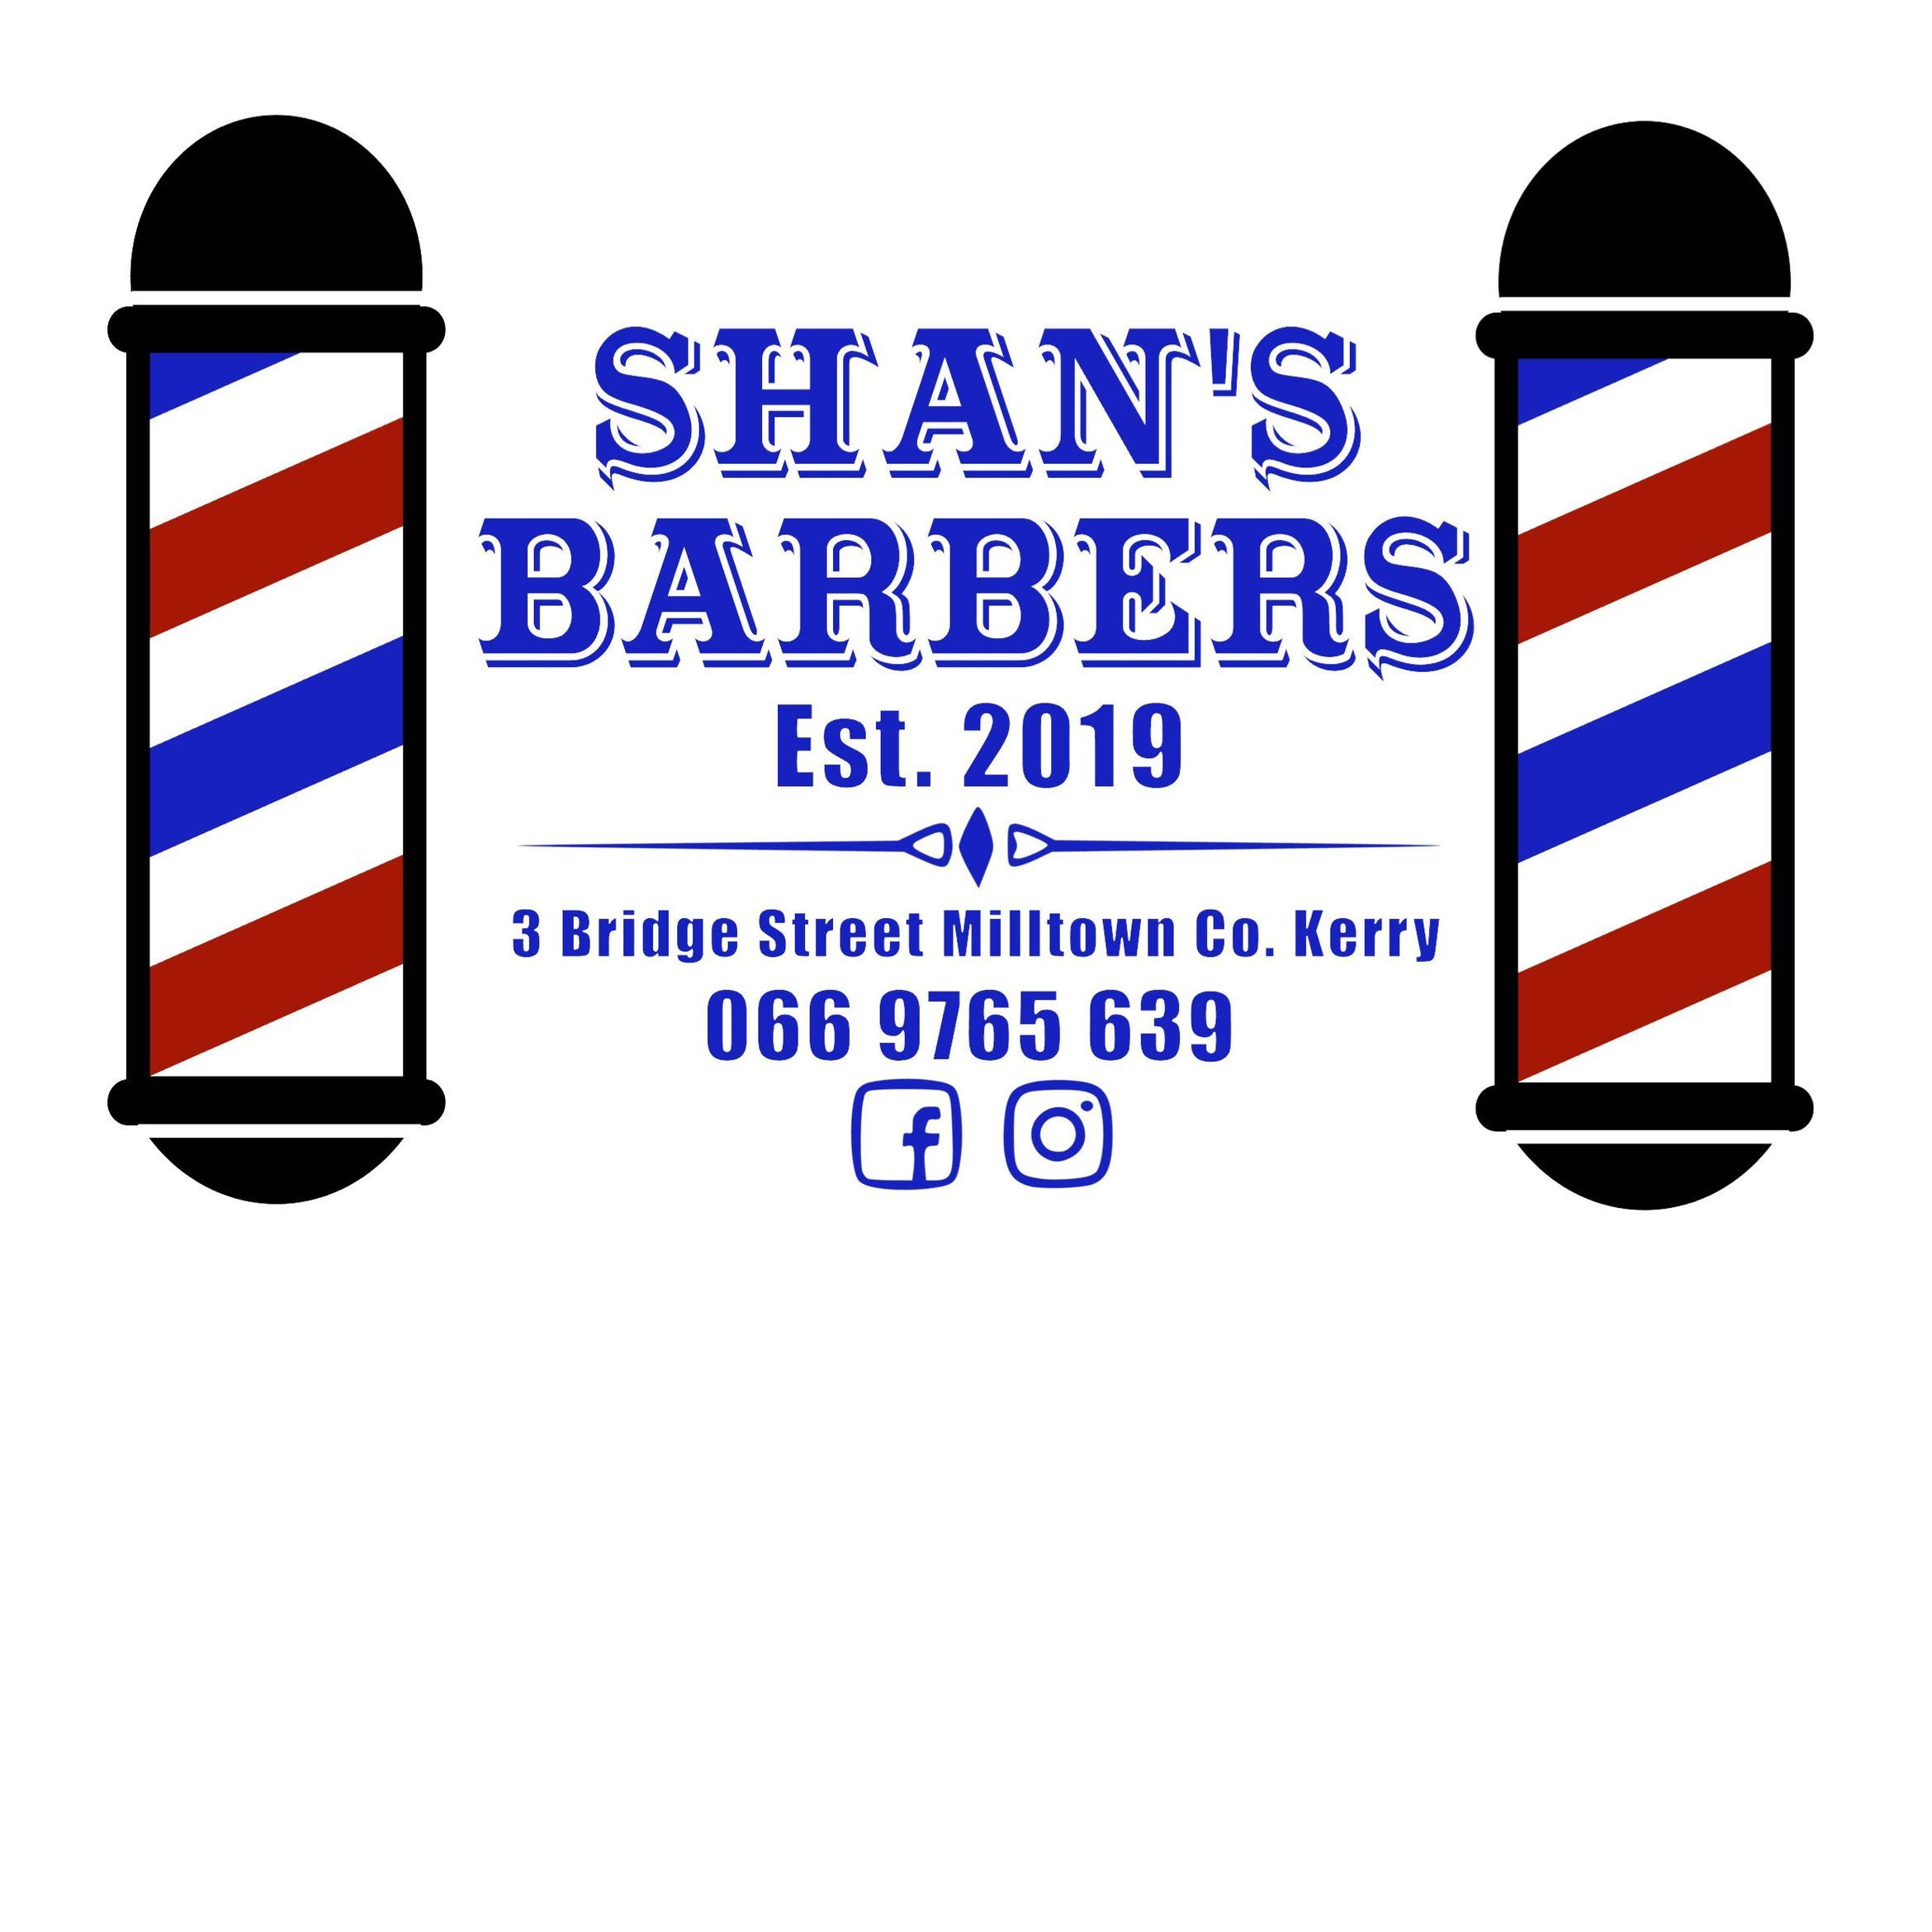 Shan's Barbers, 3 Bridge Street, Milltown, Killarney